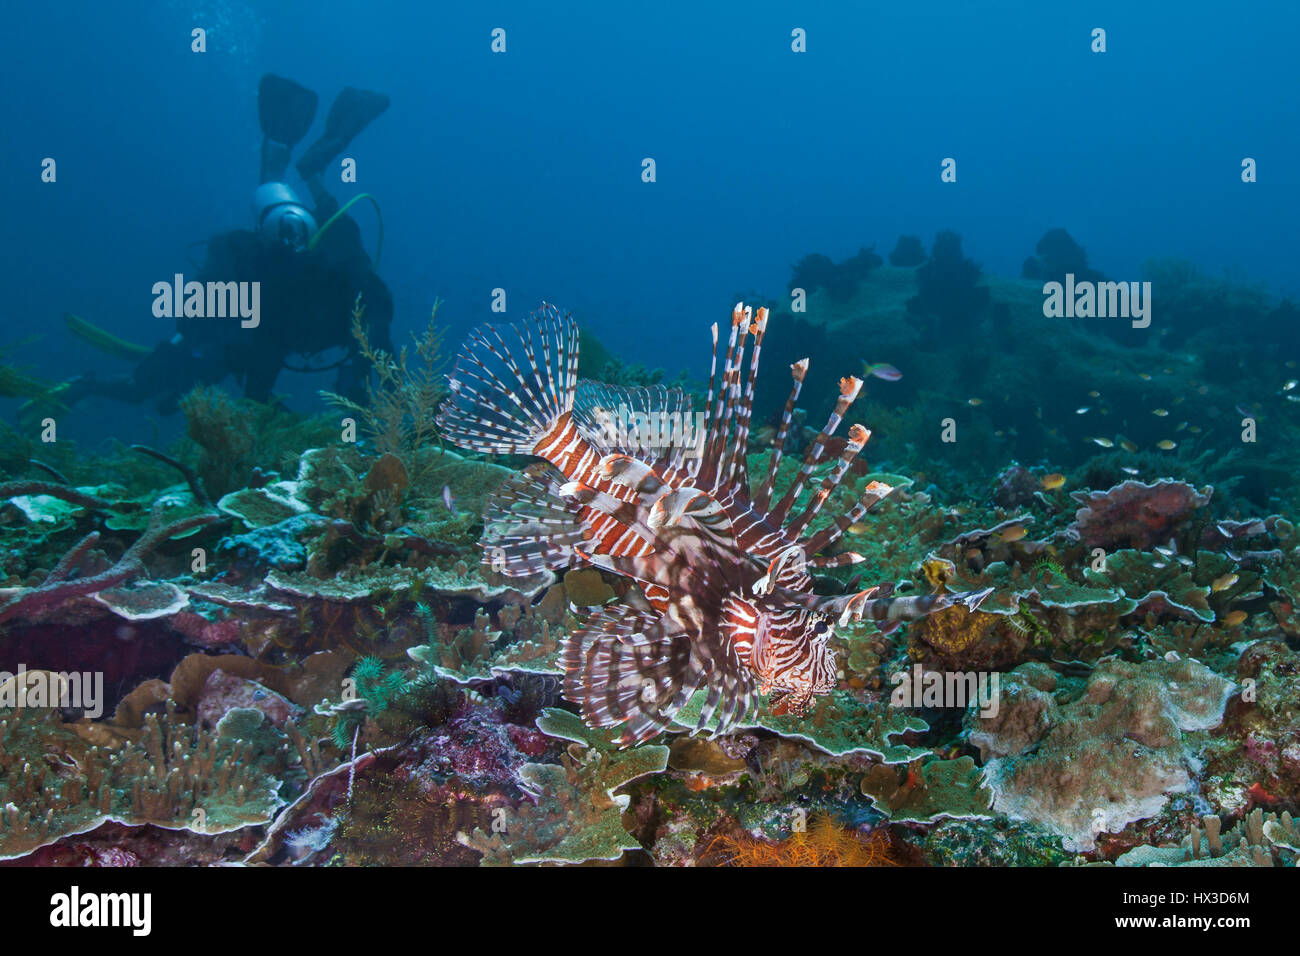 Seascape Bild der Rotfeuerfisch seine kunstvollen Flossen auf Korallenriff mit Taucher im Blauwasser Hintergrund anzeigen. Raja Ampat, Indonesien. Stockfoto